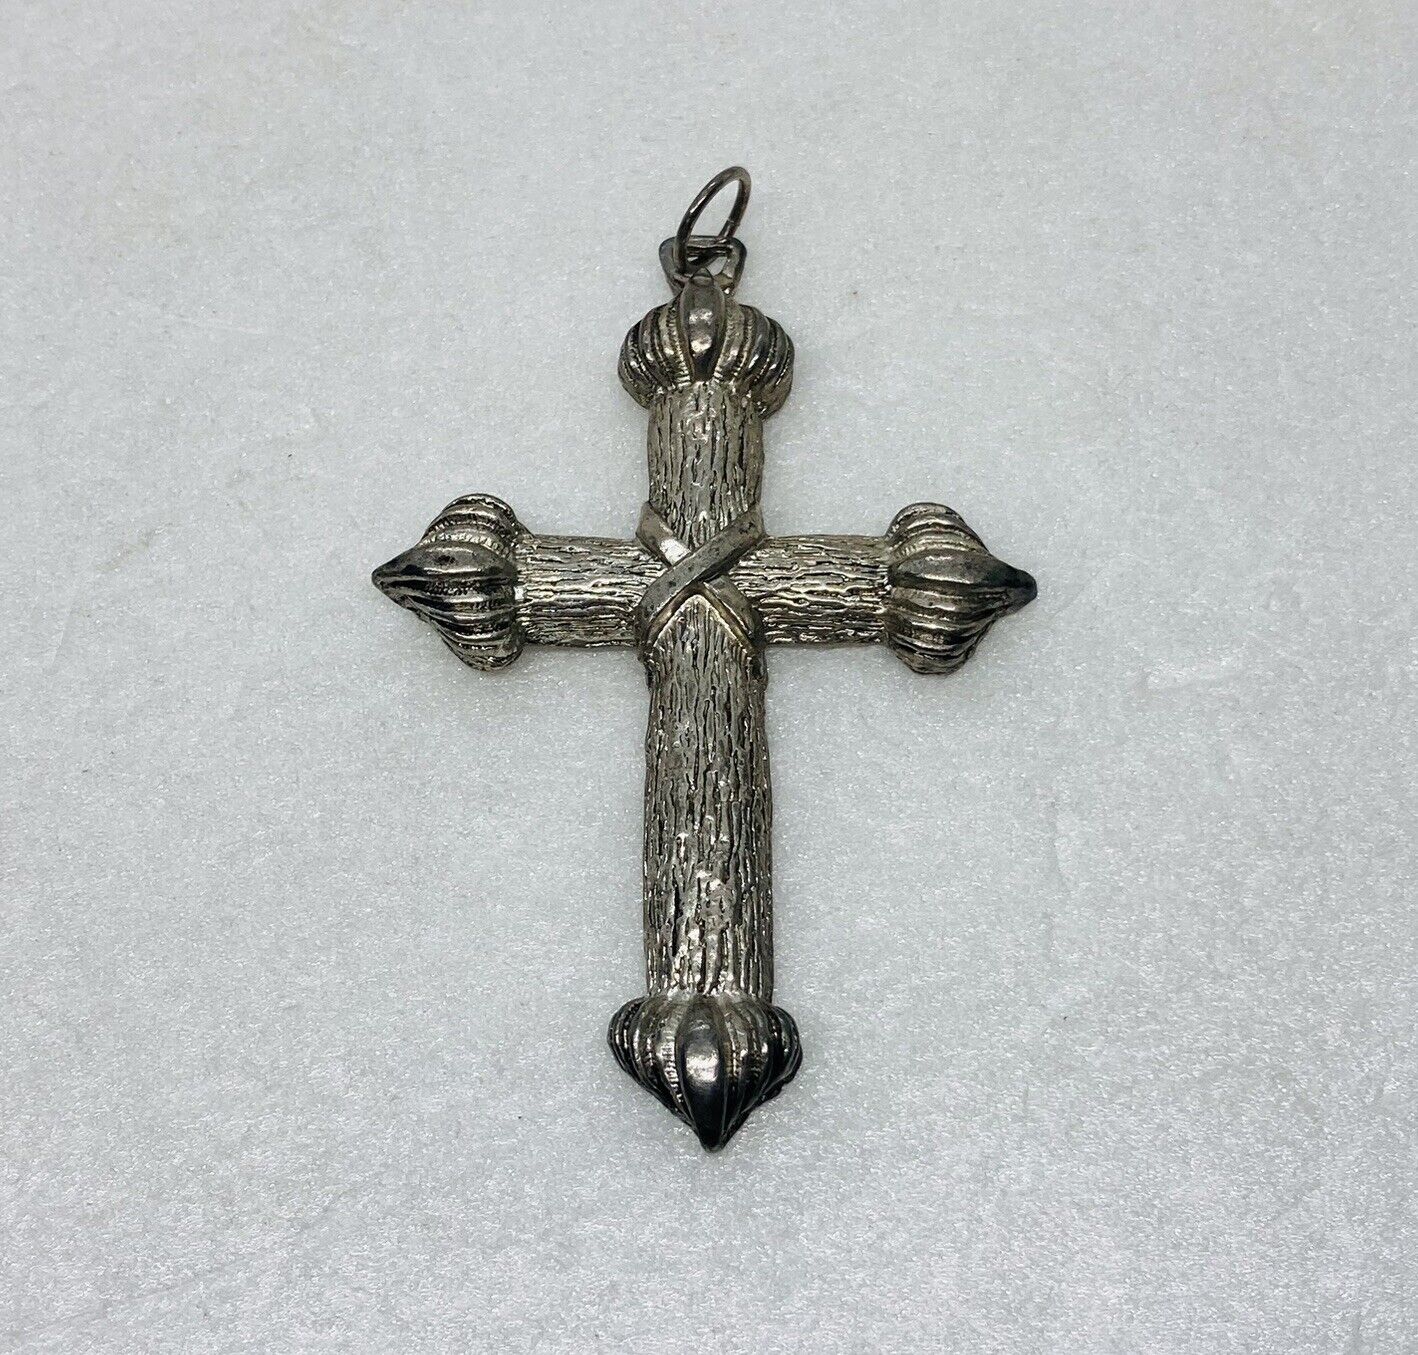 Vintage 1970s Crucifix Cross Pendant Charm Keychain Necklace 2.75” Decor 16